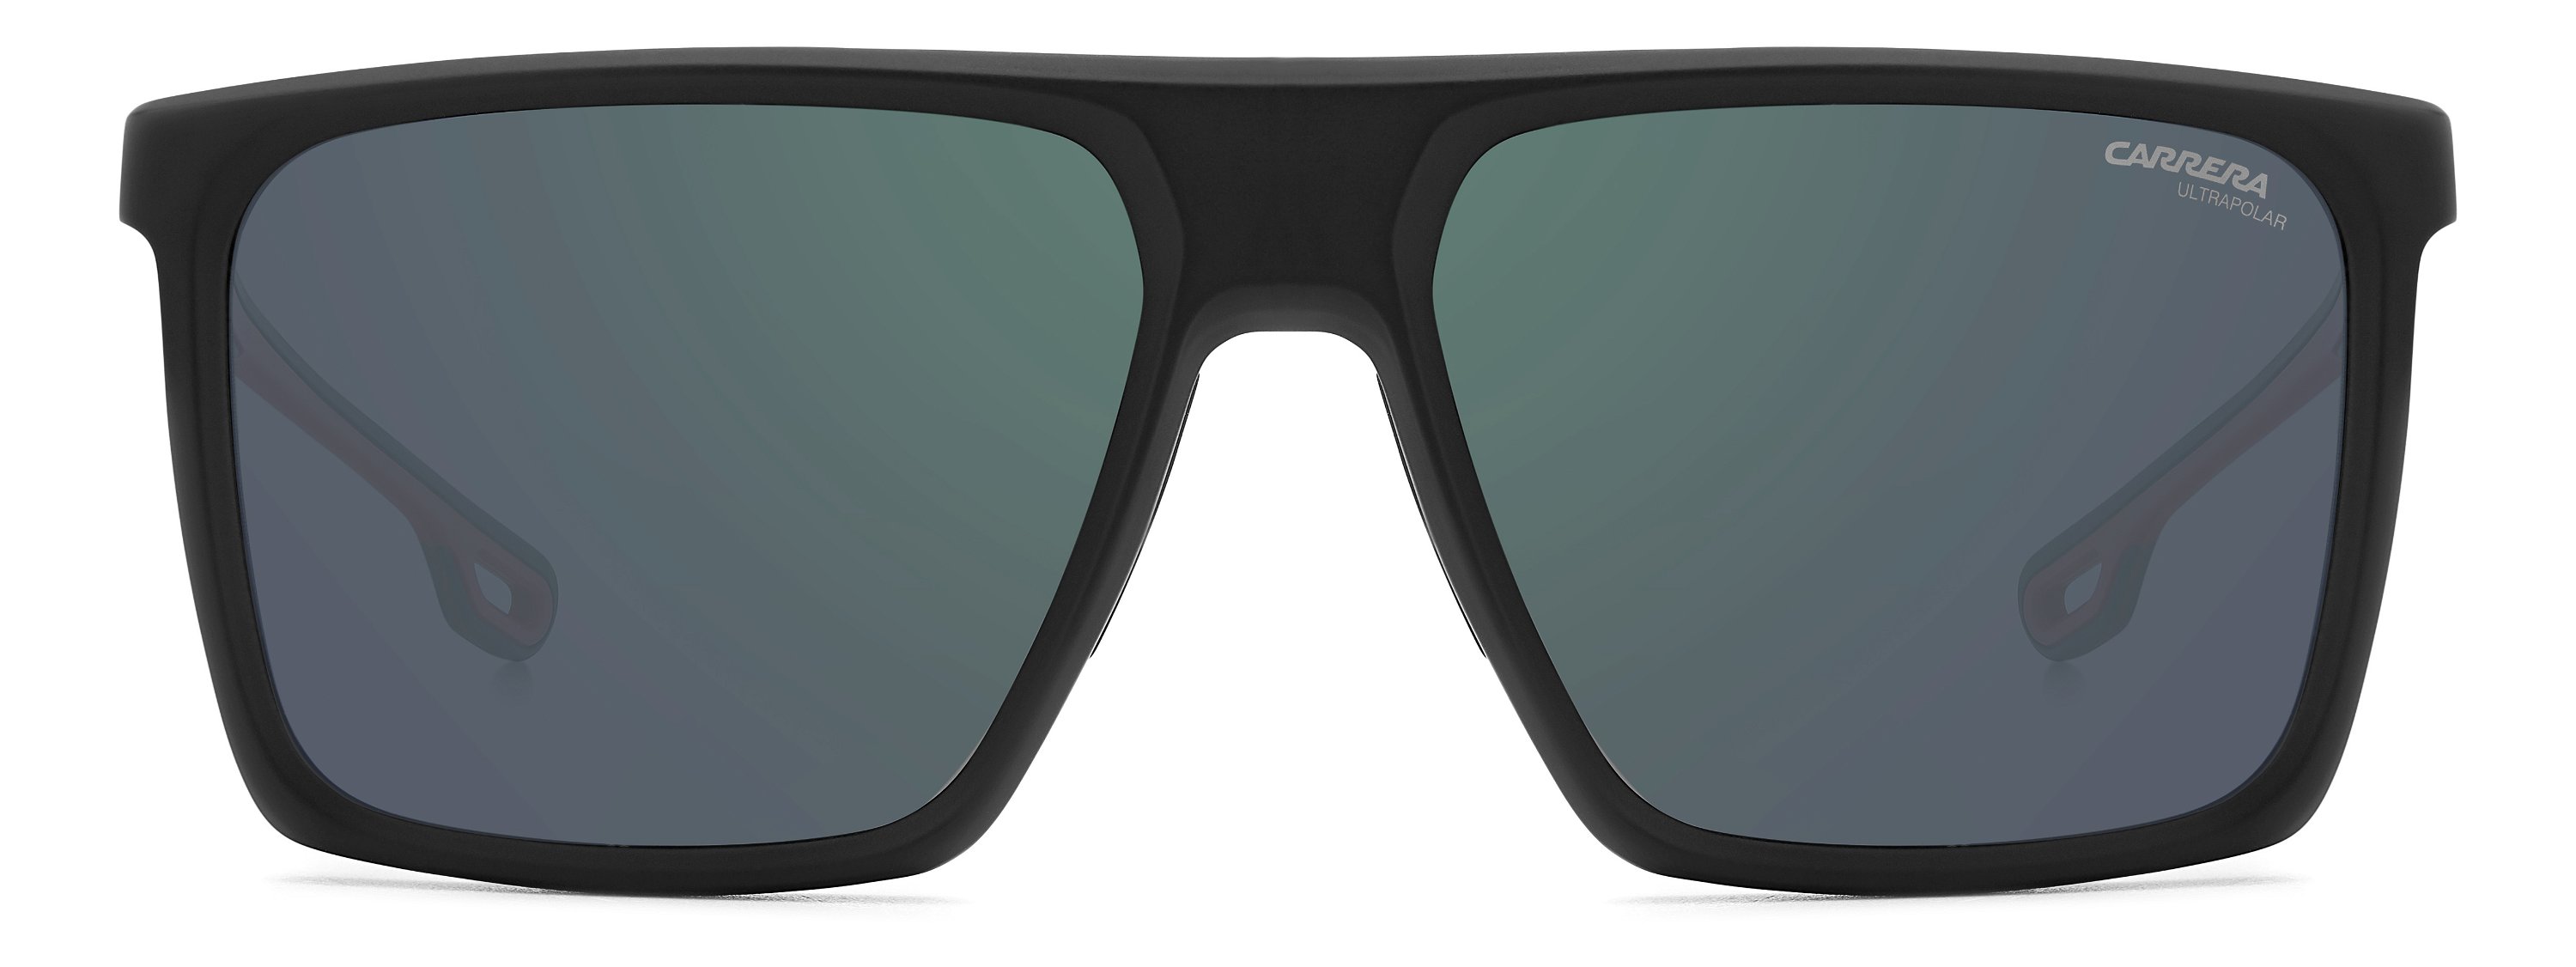 Das Bild zeigt die Sonnenbrille 4019_S BLX von der Marke Carrera in  matt schwarz.